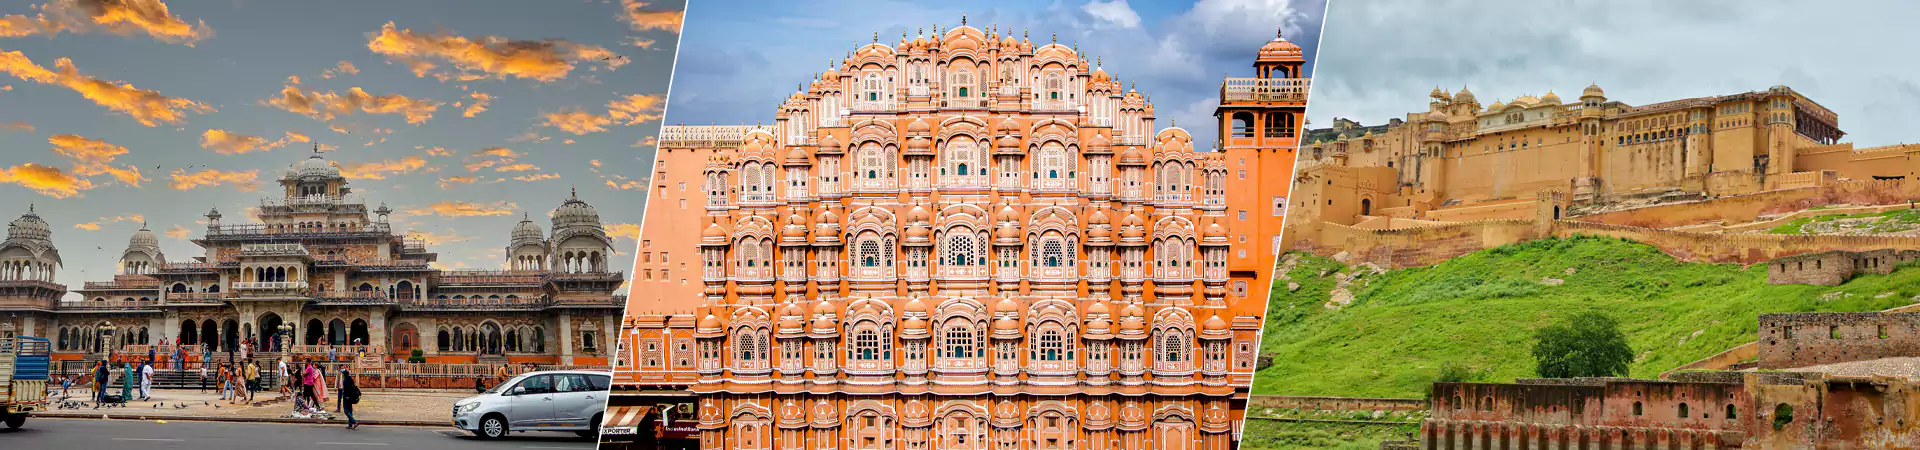 Jaipur tour